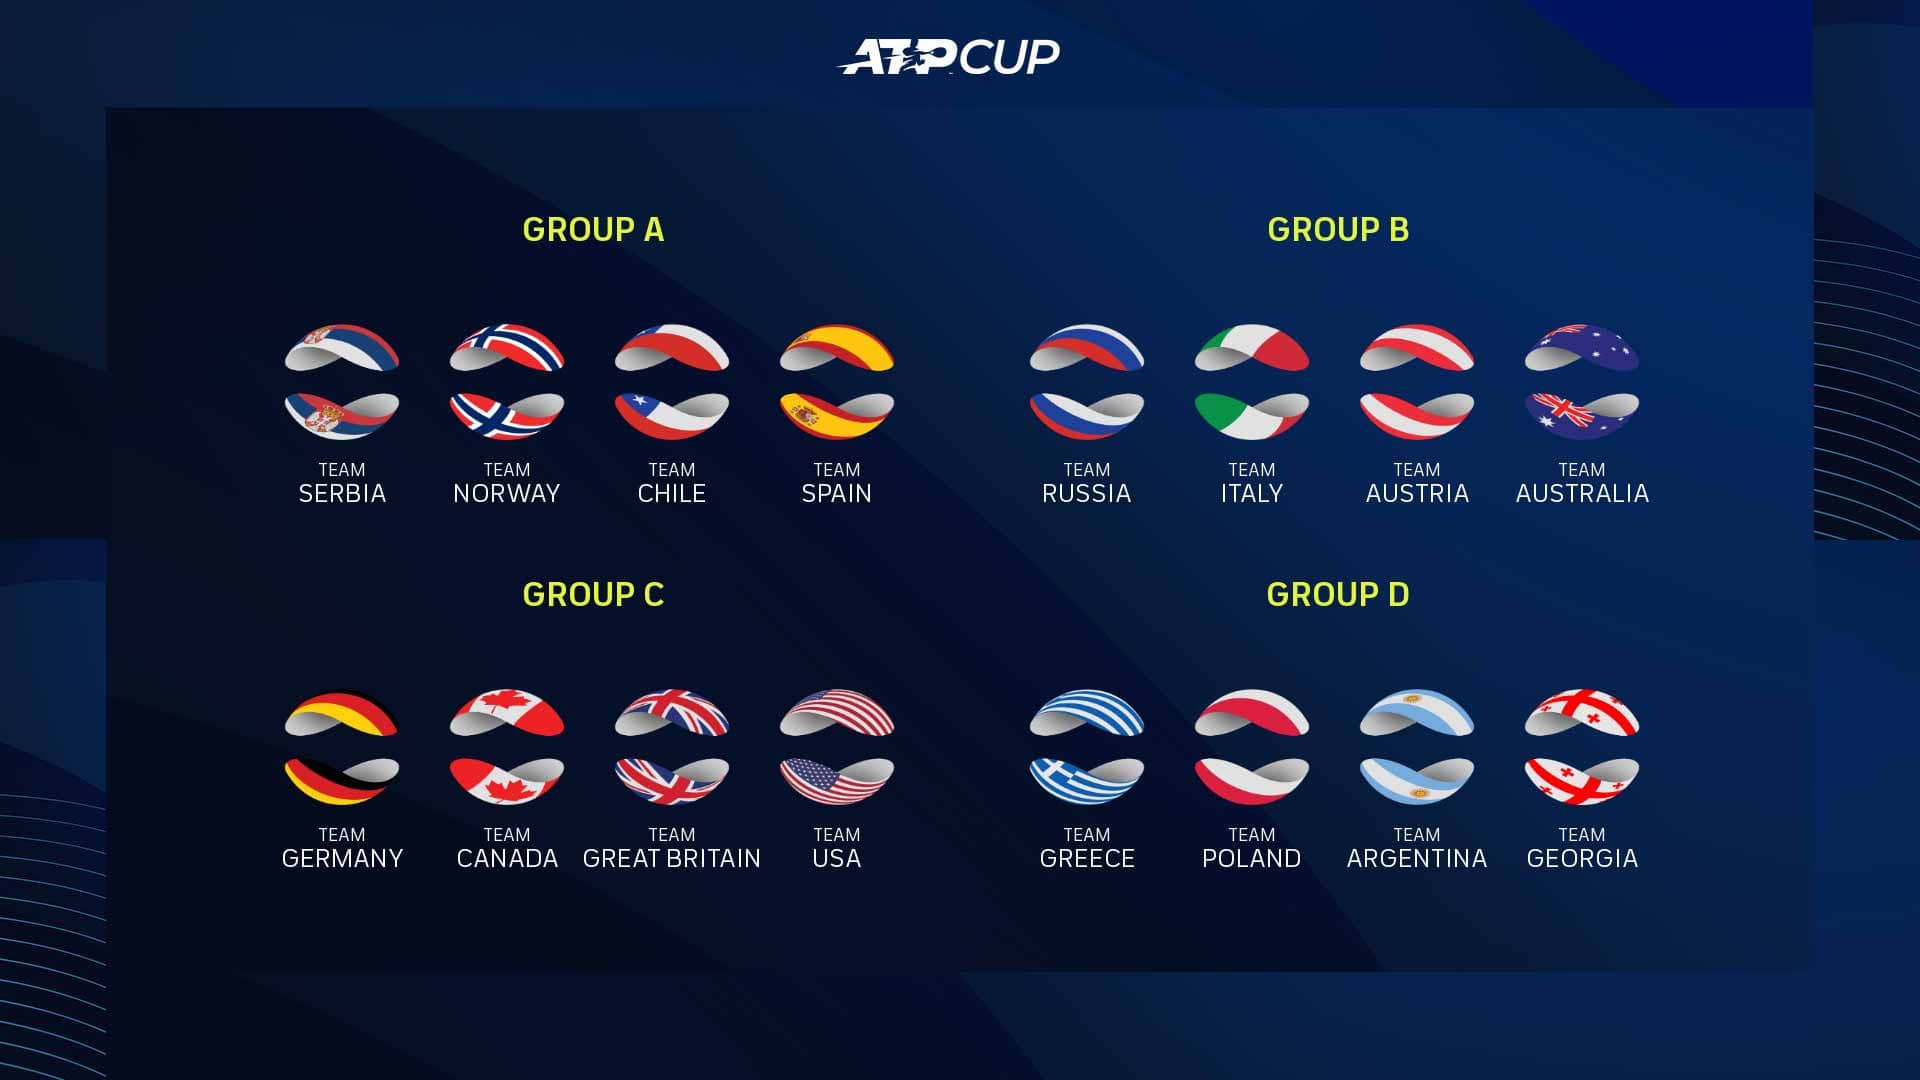 Организаторы объявили расписание матчей на ATP Cup (ОБНОВЛЕНО)